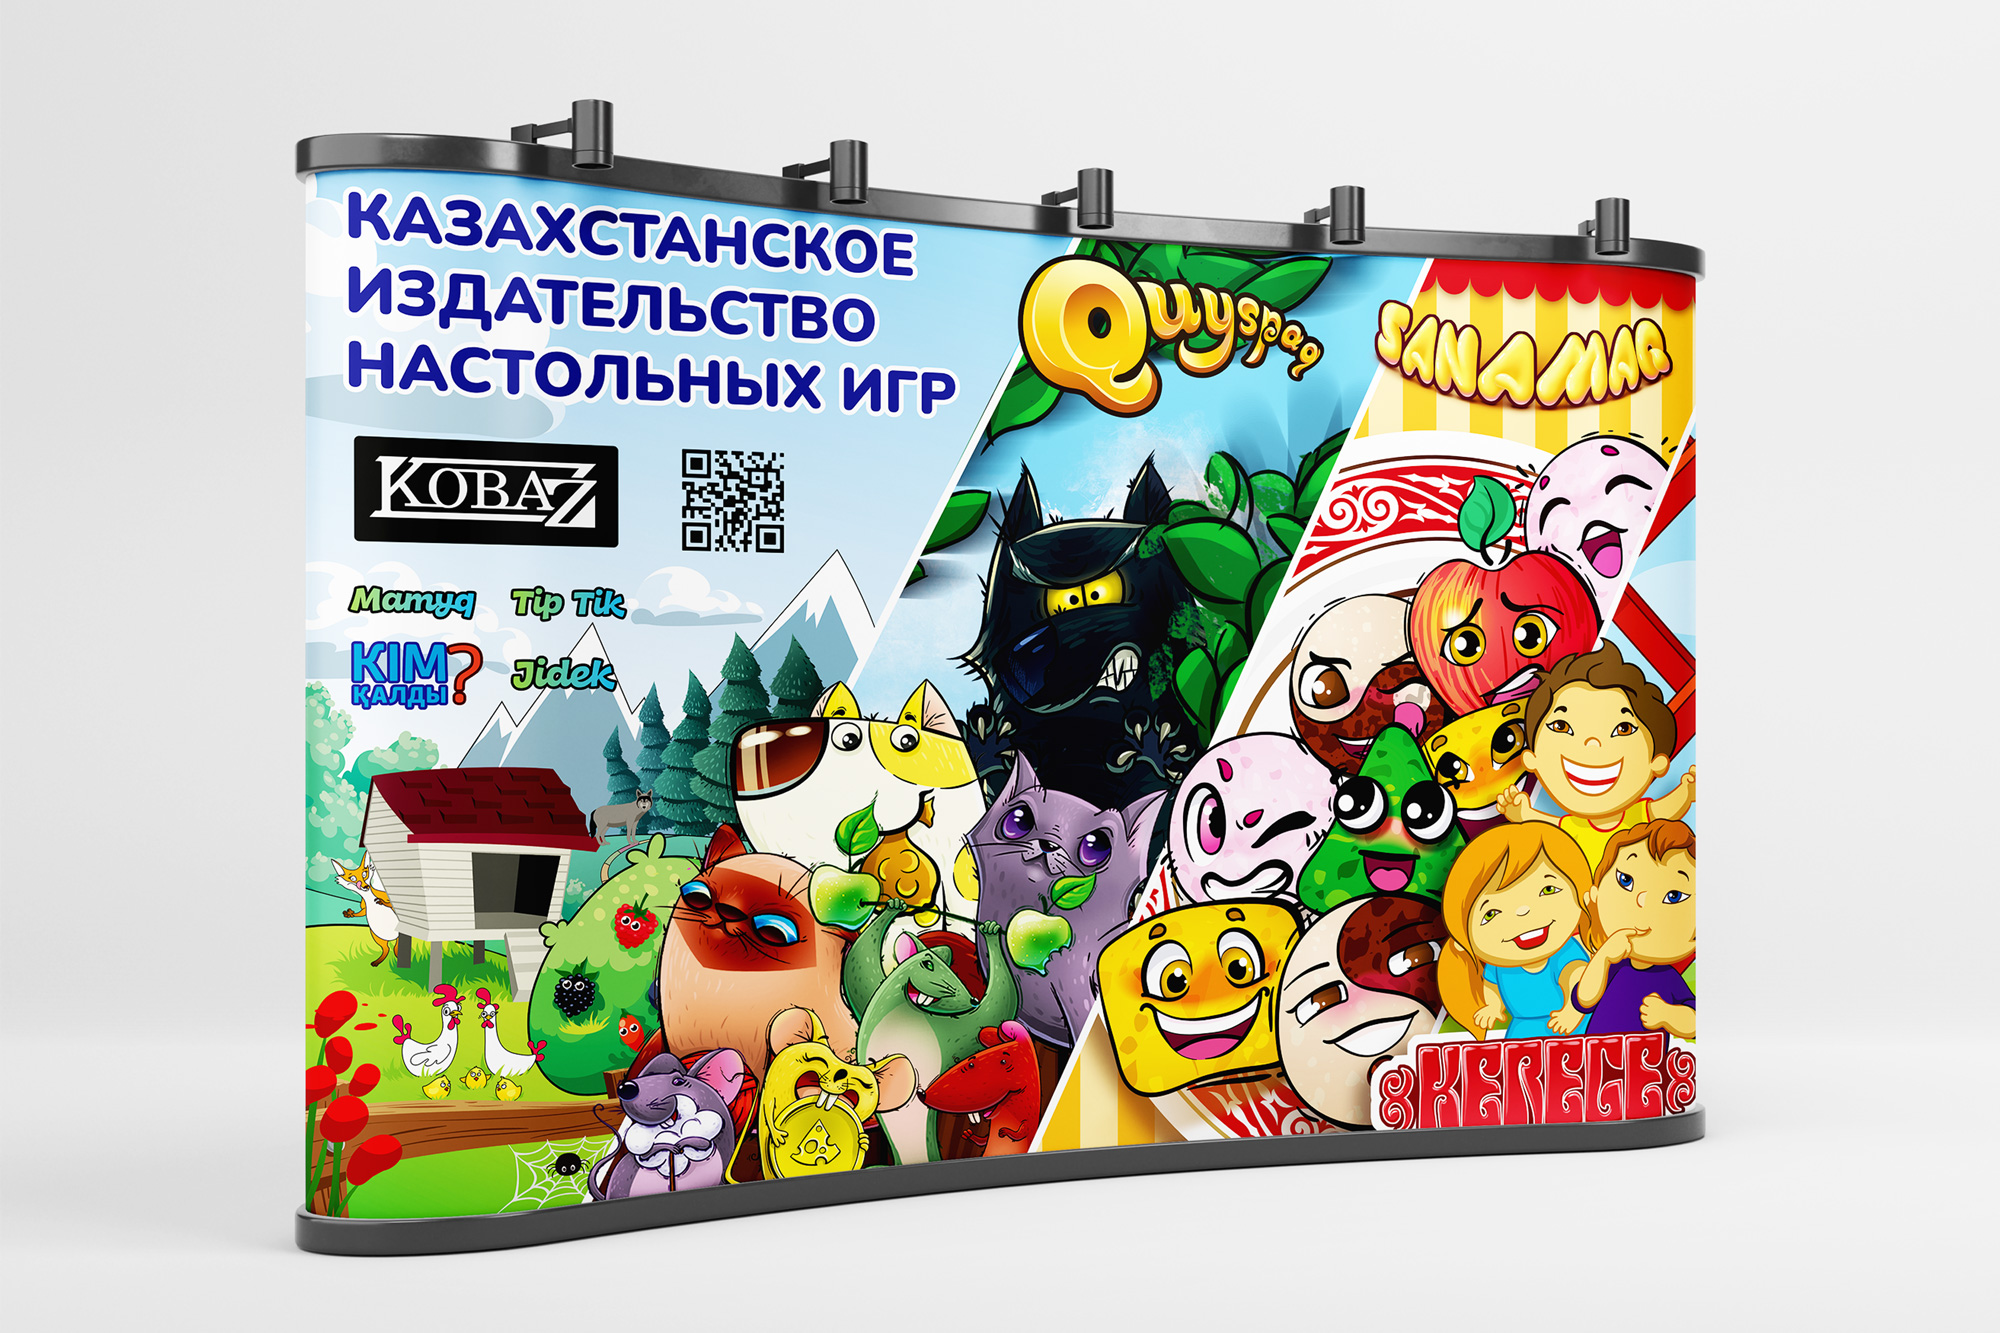 Дизайн настольных игр, Kobaz, дизайн Алматы, иллюстрация Алматы